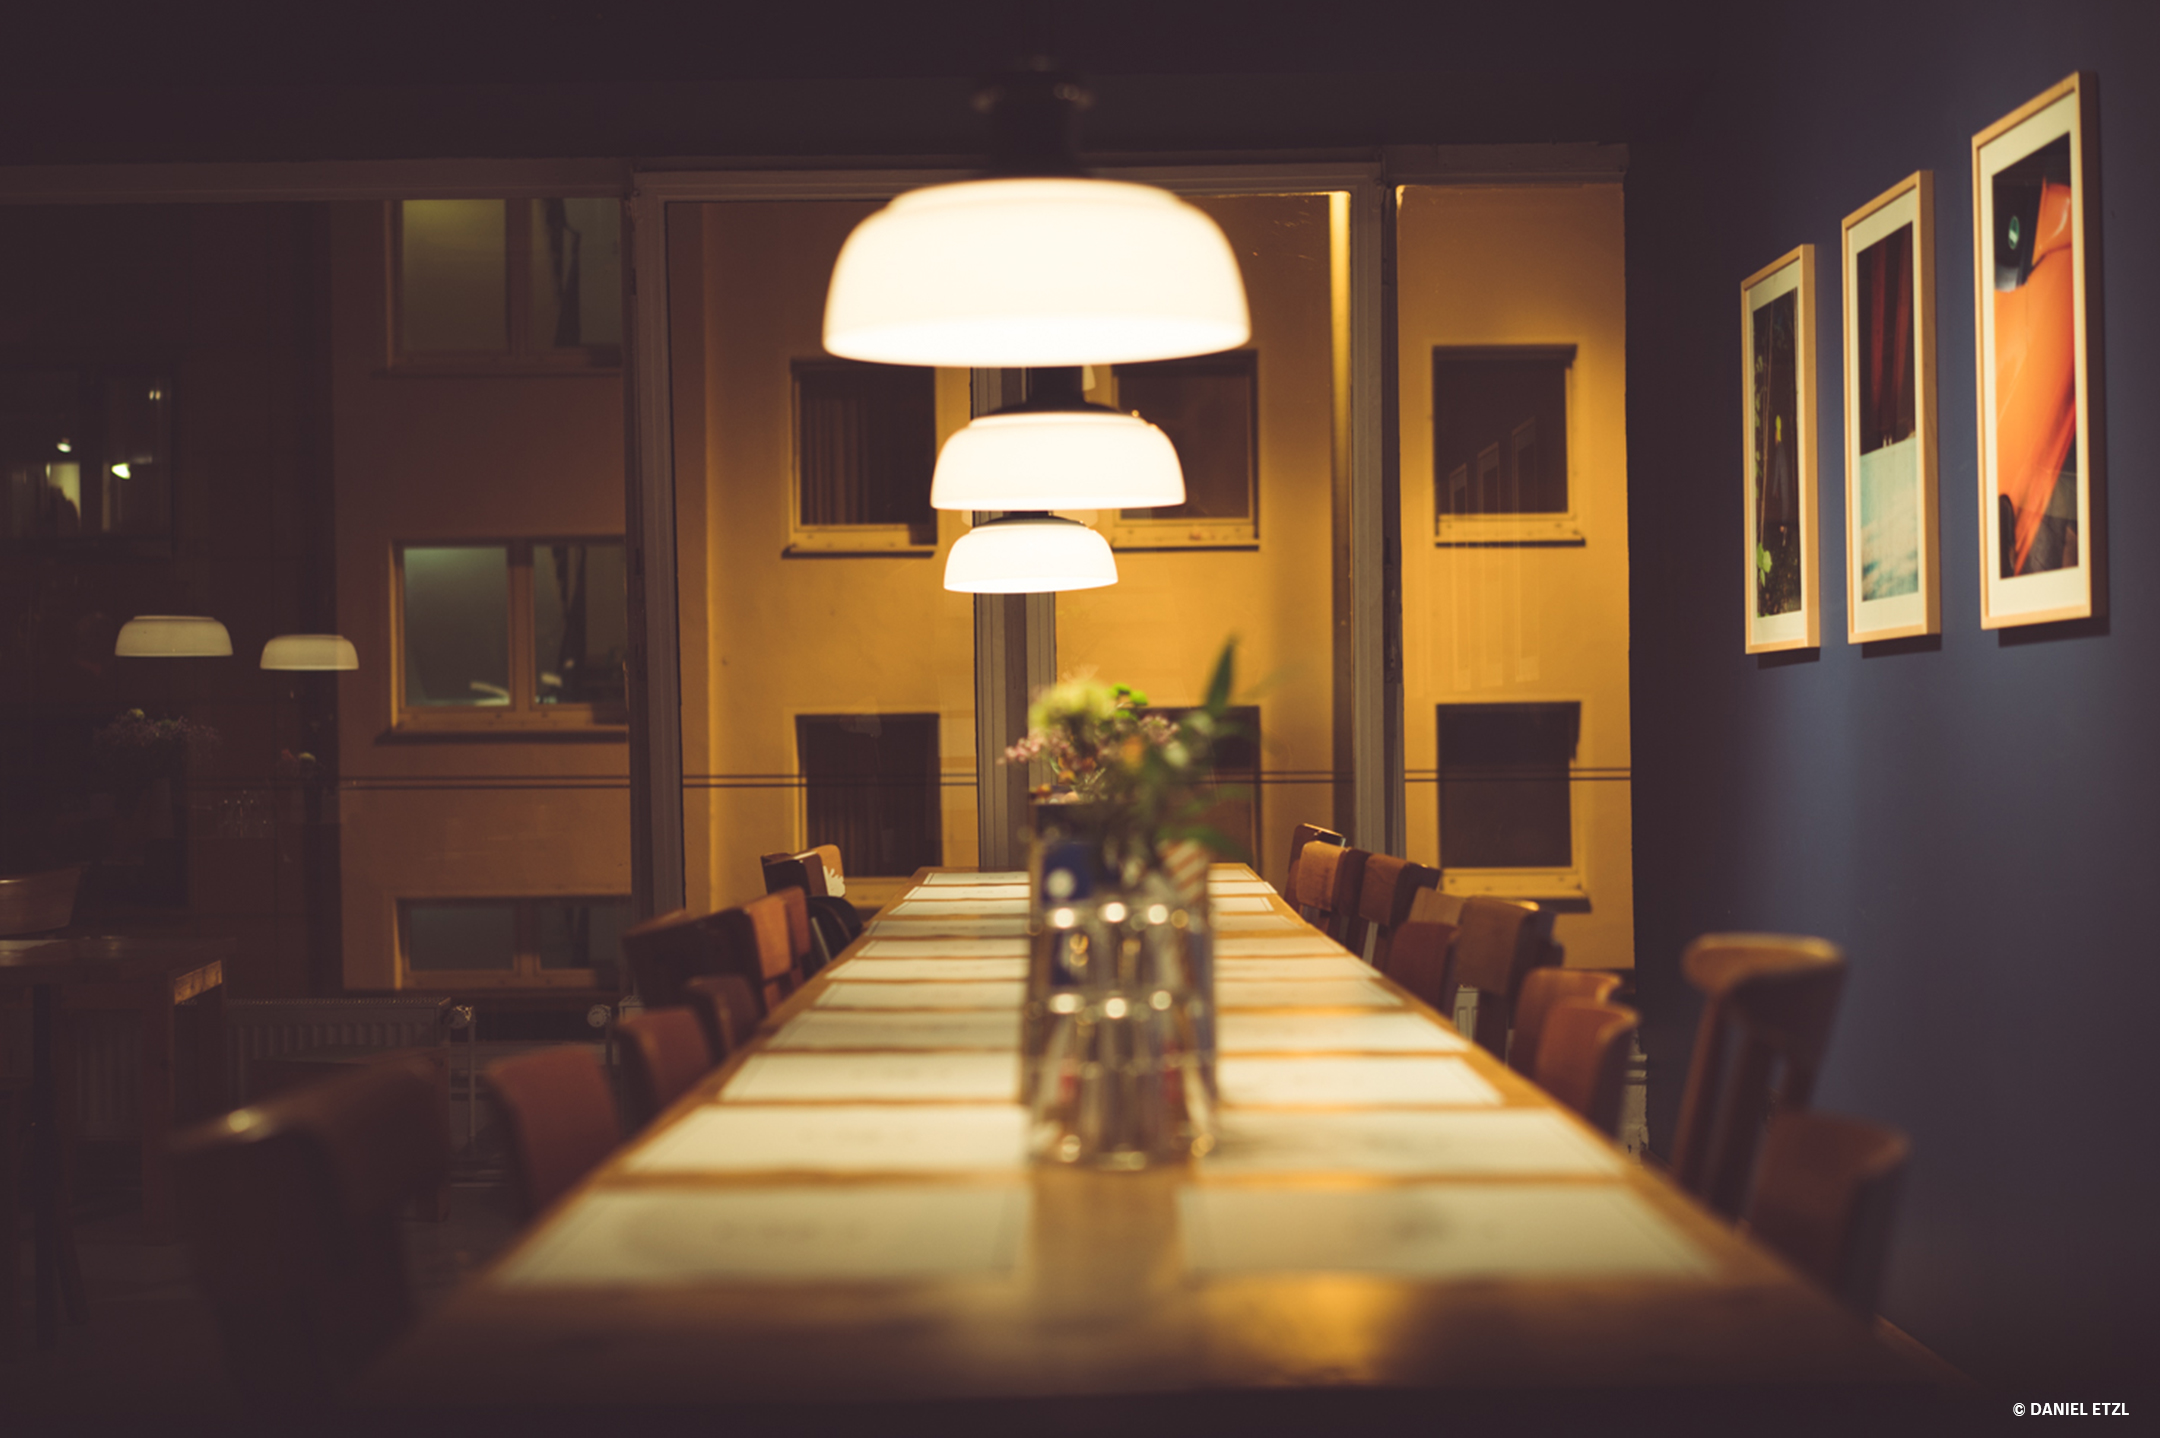 Ein langer Tisch mit verschiedenen Holzstühlen, rechts an der blauen Wand mehrere Bilder, alles erleuchtet durch drei Hängelampen über dem Tisch